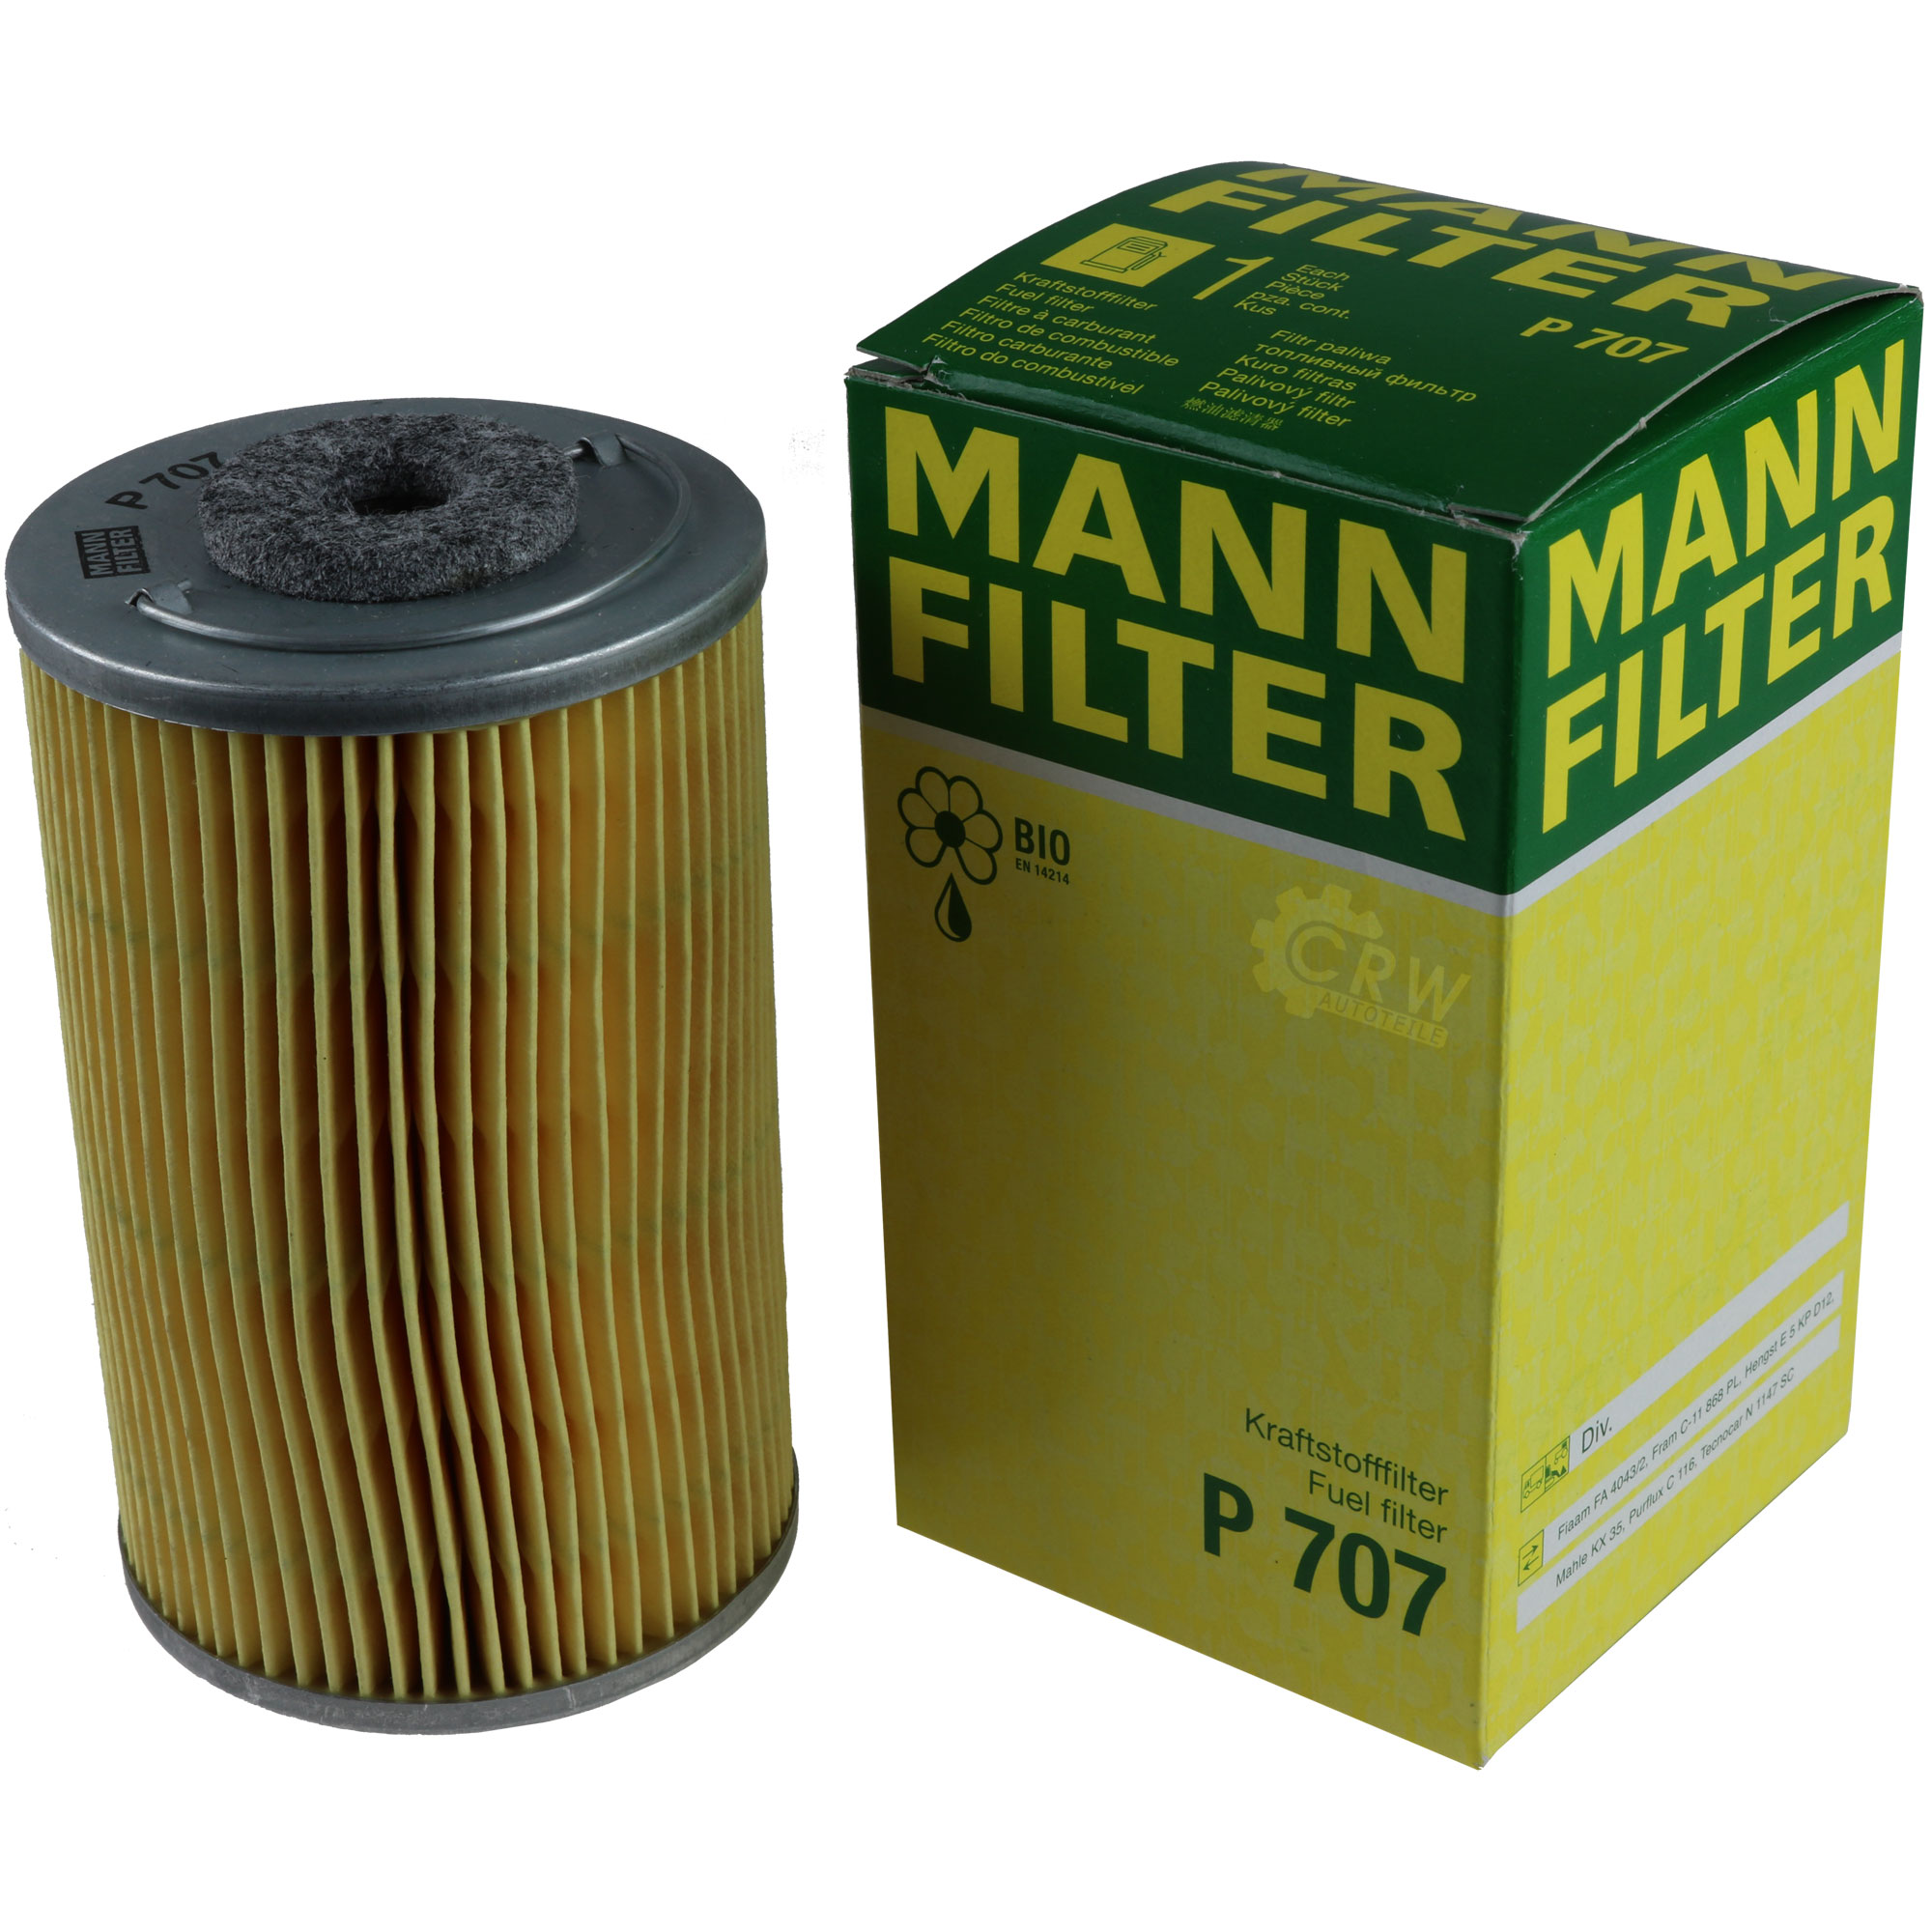 MANN-FILTER Kraftstofffilter P 707 Fuel Filter